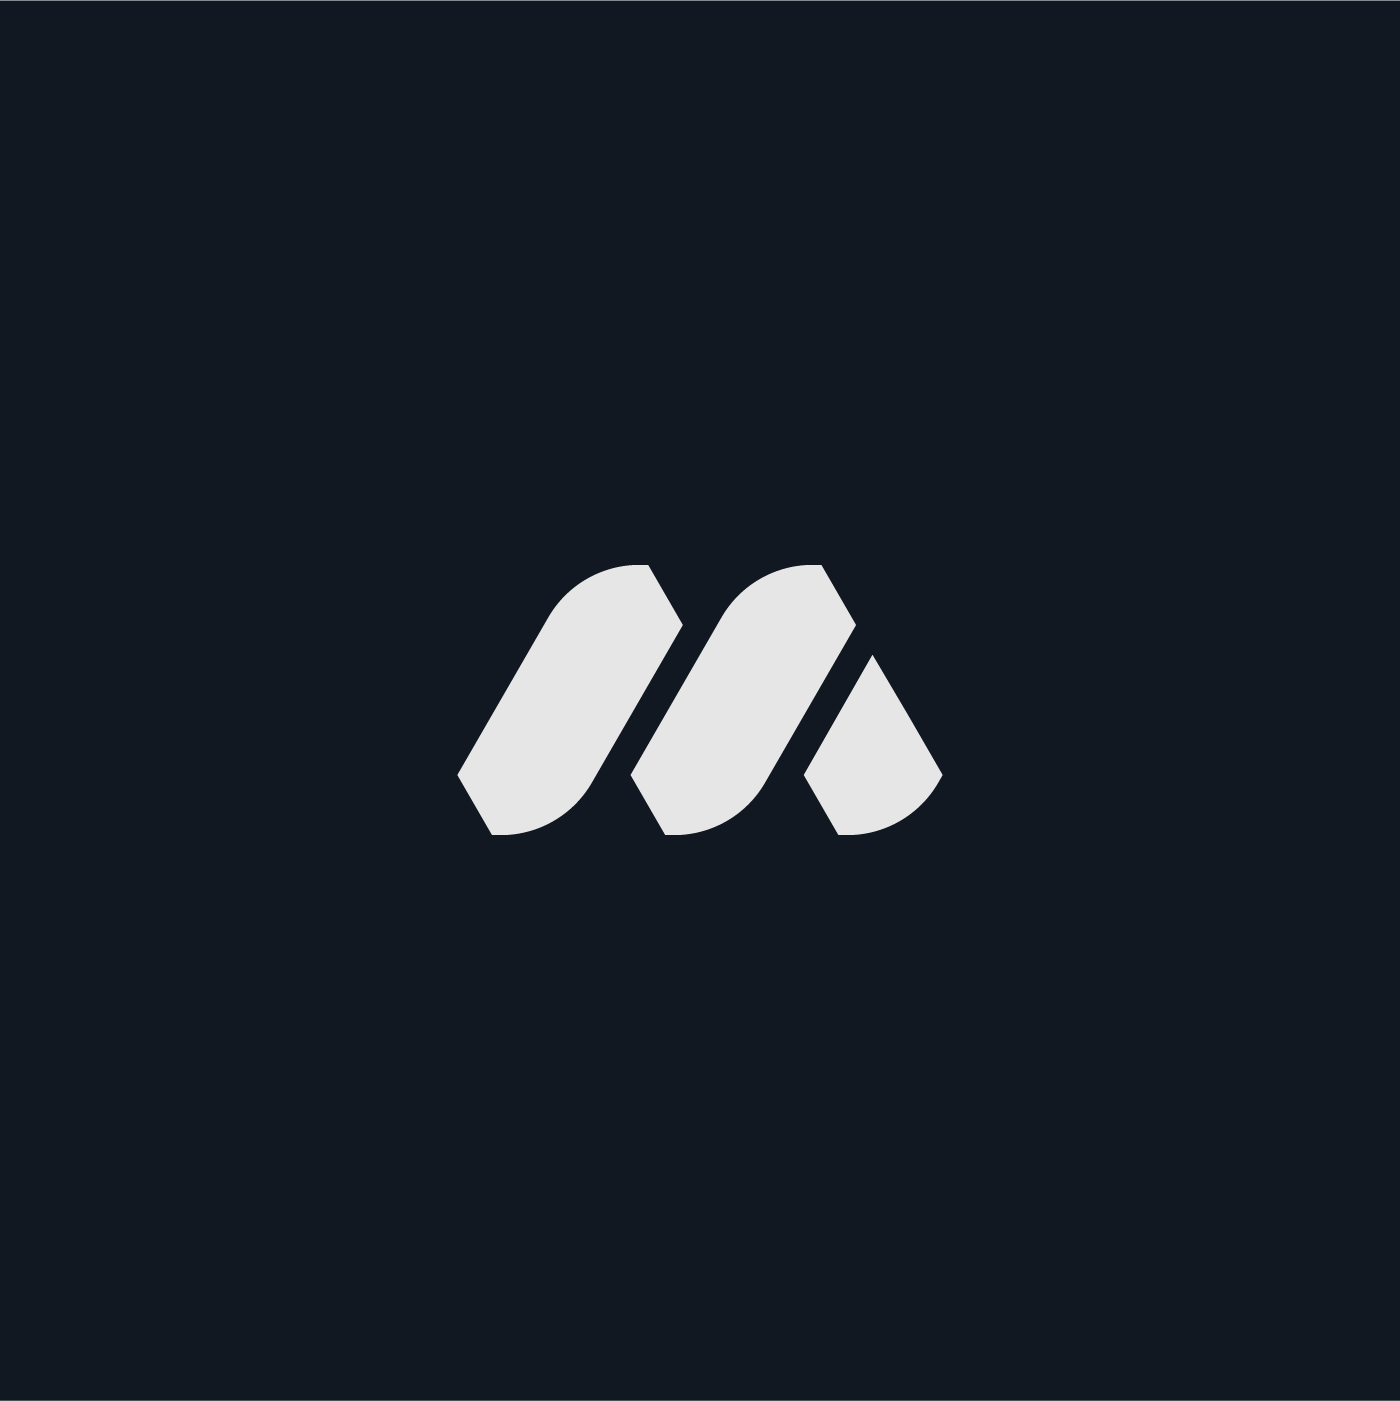 M Letter Mark Logo Concept